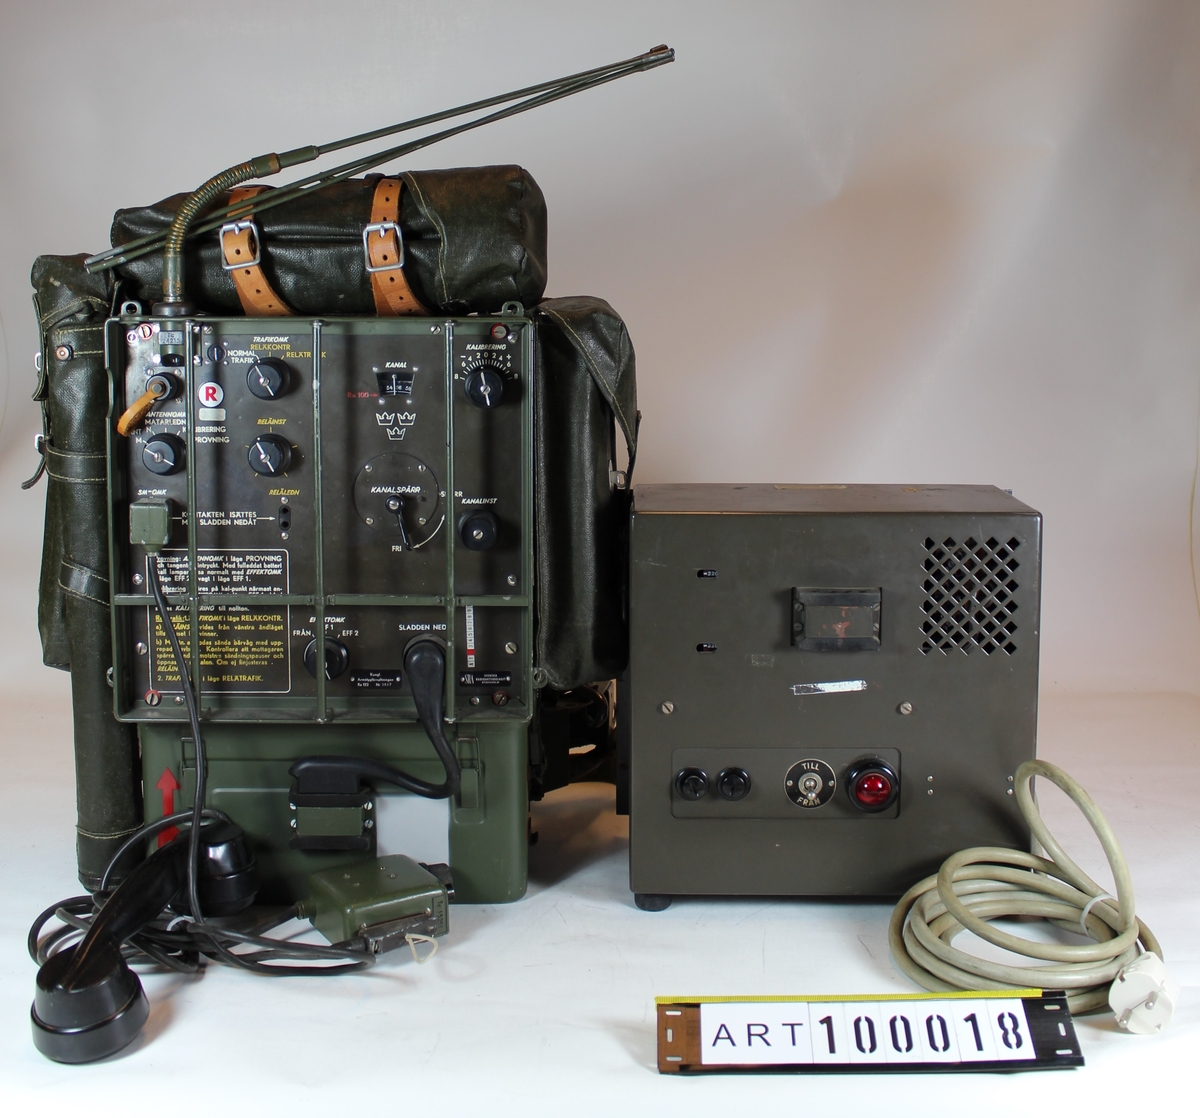 Radiostation 122 (Ra 122) 
Tc 96122

Bärbar UKV-station för telefoni inom grupp/pluton.
Radiostationen anskaffades i början av 1950 och utgick under 1980.

Ra 122 är en UKV station för telefoniförbindelse på medellånga avstånd. Stationen är i första hand avsedd att användas som bärbar station men kan även genom speciellt utformad strömförsörjning även användas i fordon.
Radiostationen drivs normalt med tre seriekopplade Nifeackumulatorer, 7,2v ackumulatorspänning. Stationen kan avstämmas på 101spärrade kanaler inom UKV frekvensåmrådet.
Stationen är utförd för frekvensmoduleringvilket gör mottagaren relativt okänslig för störningar.

Ra 120 och Ra 122 hade i övrigt samma tekniska data och utseende. Det som skilde dem åt var utförandet vid kalibrering. På Ra 120 fanns en särskild ratt härför. På Ra 121 och Ra 122 var den funktionen ett läge på antennomkopplaren.
Samtliga modeller kunde fjärrmanövreras och användas för relätrafik.

Ra 120 fanns inom hela försvaret således även vid marinen och flygvapnet samt vid de flesta truppslag. Den framtogs ursprungligen för artilleriet, medan Ra 122 skulle tilldelas luftvärnet. Det blev senare tvärt om.

Tekniska data:
Frekvensområde:	               47,0 – 57,0 MHz
Antal kanaler:	               101
Modulation	                       FM, Frekvensmodulering
Strömförsörjning:	       3st ack D22
Uteffekt:	                       0,5 alt 3,0w
Räckvidd:
   Marschantenn:	              ca 6Km
   Normalantenn:	              ca 13Km
Driftstid:	                      ca 12 tim
Totalvikt:	                      22,2Kg

Sven Bertilssons kommentarer:
Ra 12-seriens stationer var funktionssäkra och lättreparerade. 
Problemet var Ra 121 och Ra 122, de ville gärna självsvänga. 
Då man hade öppnat stationen och utfört en reparation och trimning skulle man kontrollera att den ej självsvängde. När man sedan stoppade tillbaks den i lådan började den som regel att självsvänga. Man fick då justera varvtalet på någon spole tills självsvängningen upphört och åter sätta den i lådan, ofta med förnyad självsvängning. Det fenomenet blev bättre efter det stationerna modifierats. 

Historik/kuriosa
År 1947 skrevs ett program för en ny radiostation med följande krav:
Stationen skulle bestå av tre bördor, apparatenhet, reservbatterienhet samt handgenerator och effektsteg.
Den skulle utföras i två versioner; den ena med frekvensområdet 30 – 36 MHz fördelade på 60 kanaler och den andra omfattande 45 – 54 MHz och 90 kanaler. 
Sändarens uteffekt skulle vara 0,7 W och med effektsteg 4 W.
Offert begärdes in från Svenska Radio AB och Standard Radio.
En försöksserie omfattande 5 stationer av varje version skulle byggas.
Svenska Radio AB offert var på 317 000 kr och Standard Radios på 445 000 kr, varför Svenska Radio AB fick jobbet. Ordern utökades sedan till en något större provserie.
Under 1948 presenterade SRA den första stationen, som provades vid Ellab med förödande resultat då den sattes i skakmaskinen.
Efter förnyad konstruktion kunde den första stationen presenteras den 16 juli 1949. Den fick då namnet Ra 120 för version 30 – 36 (34,11 – 41,69) MHz och Ra 122 för version 45 – 54 (47,0 – 57,0) MHz. Frekvensomfången hade ändrats mot det ursprungliga kravet.
Sammanlagt 3 400 st Ra 120 levererades och 1 000 st Ra 122. 
Senare tillkom också en version, som skulle vara fordonsmonterad. Den fick namnet Ra 121 och beställdes i 1 786 exemplar. Dess frekvensområde täckte frekvensbandet mellan Ra 120 och Ra 122.
Den slutliga versionen av Ra 120 och Ra 122 var på två bördor; apparatenhet och reserv- batterienhet. Någon handgenerator och effektsteg behövdes ej. Den kunde i effektläge II avge 4 W uteffekt.
Flera år senare tillkom ett särskilt effektsteg (M2554-201010 och M2554-201020), som gav en uteffekt på 40 W. Samtidigt anskaffades en speciell högantenn med betydligt högre verk- ningsgrad.

Benämningssystem för radiostationer:
I slutet av 1940-talet infördes ett nytt system att benämna bl a arméns radiostationer. 
I stället för uteffekt och modellårsnummer tillkom följande system:
Beteckningssystem för radiostationer
Ra 100-199      Lätta bärbara batteridrivna stationer (förbindelse under marsch)
Ra 200-299      Tunga bärbara generatordrivna stationer (ingen förbindelse under marsch)
Ra 300-399      Stationer som i ej driftklart skick transporteras på fordon
Ra 400-499      Stationer i bandfordon (direkt driftklara).
Ra 500-599      Stationer i personbilar (direkt driftklara).
Ra 600-699      Tyngre stationer monterade i bussar och/eller släpvagnar Ra 700-799		         Fasta stationer
Ra 800-899      Reserv. Ra 8xx blev senare beteckningen för Marinens radiostationer
Ra 900-999      Mottagare

Beteckningen anger:
Första siffran	transportsätt/kraftförsörjning
Andra siffran	viss stationstyp inom den ram som anges av första siffran
Tredje siffran 	utvecklingsnr refererande till stationstyp som anges av andra siffran

Underlag till ”beskrivning” är i huvudsak hämtat ur Försvarets Historiska Telesamlingar
Armén, sammanställning över arméns lätta radiostationer under 1900-talet av
Sven Bertilsson och Thomas Hörstedt (Grön radio).
